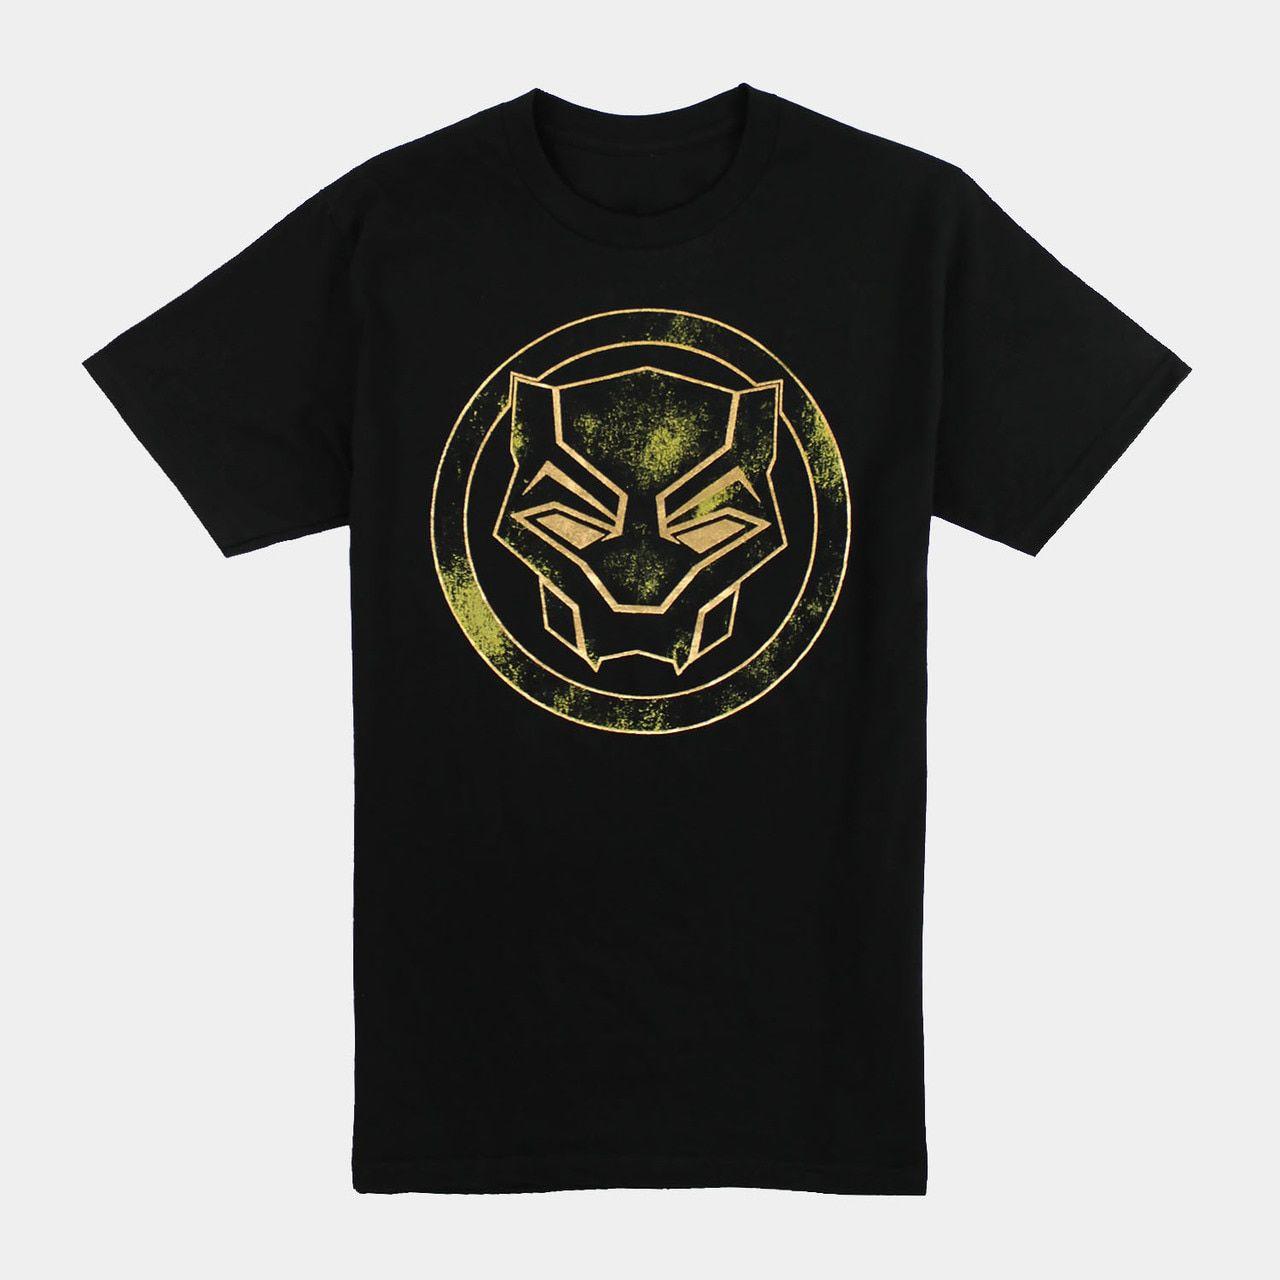 Gold and Black Panther Logo - Black Panther Gold Foil Logo Comics T Shirt